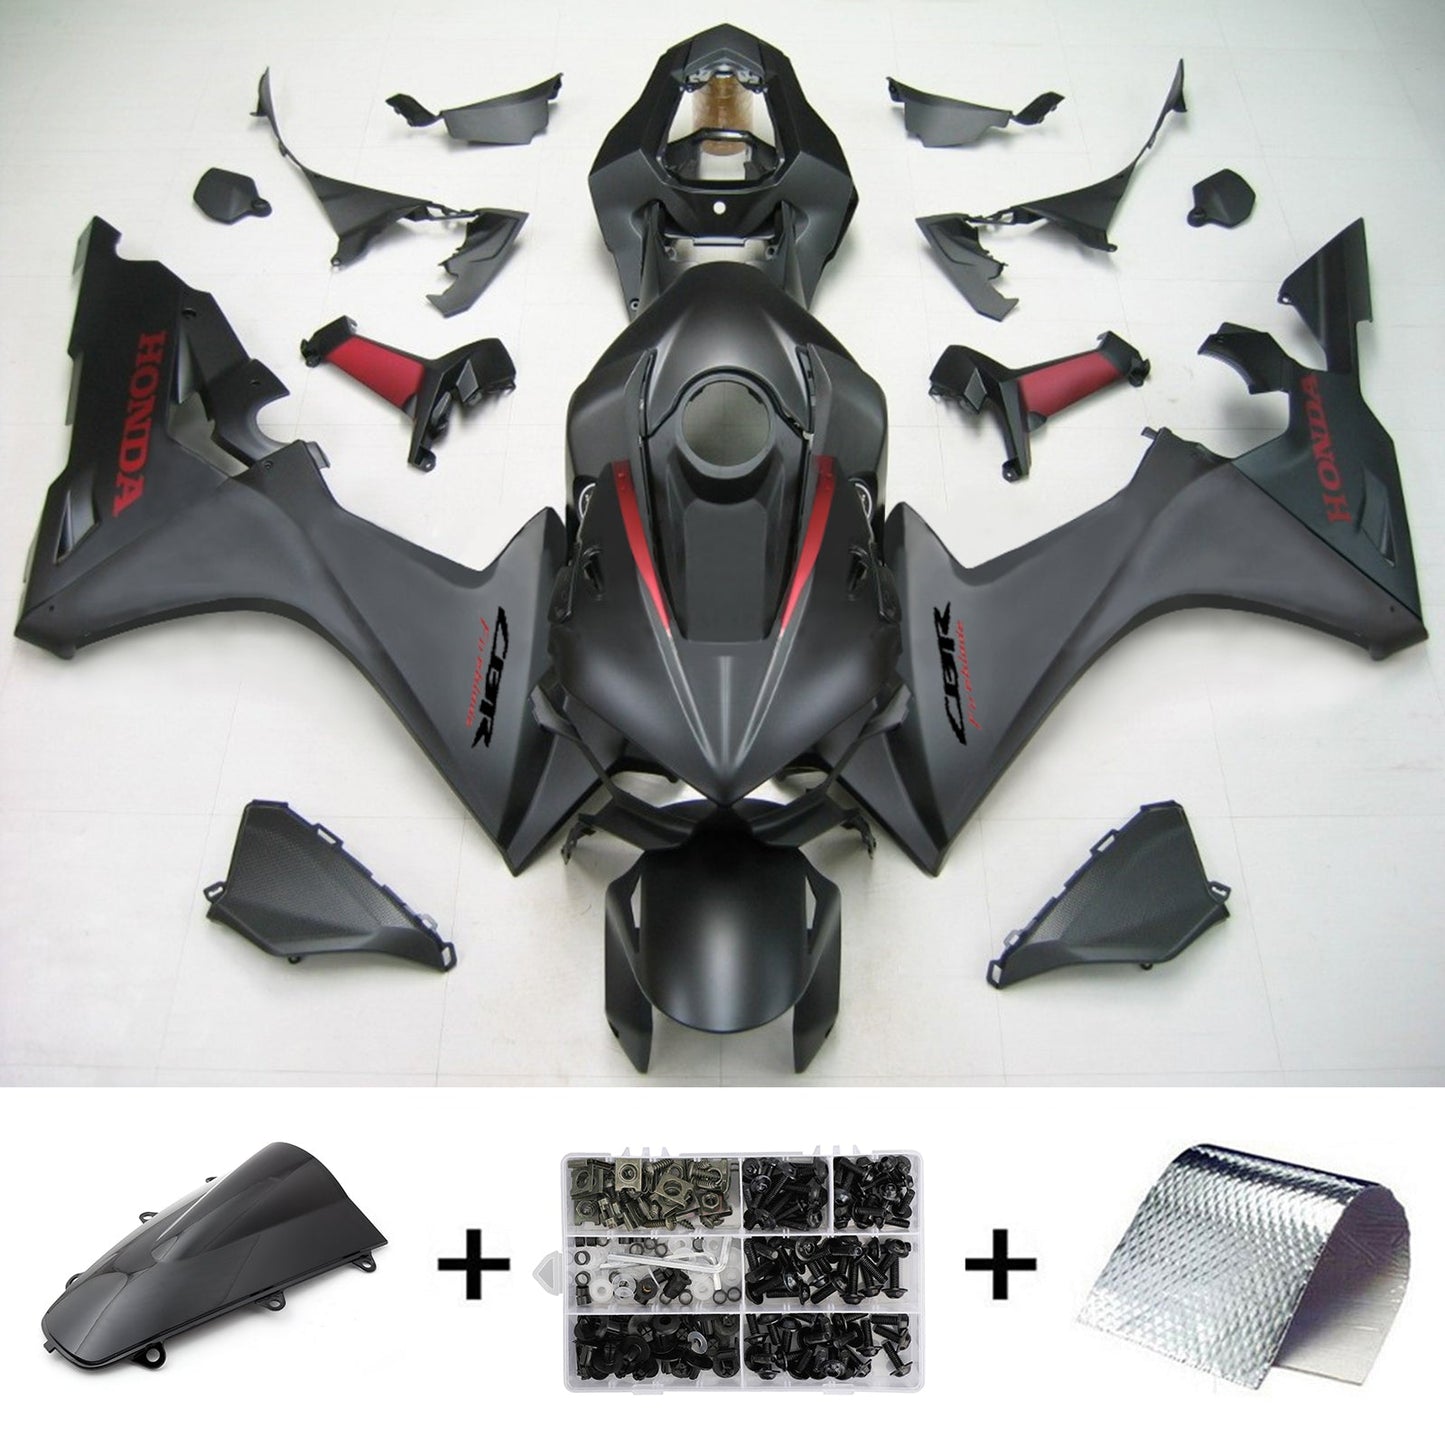 2020-2022 Honda CBR1000RR-R Amotopart Injection Fairing Kit Bodywork Plastic ABS #111